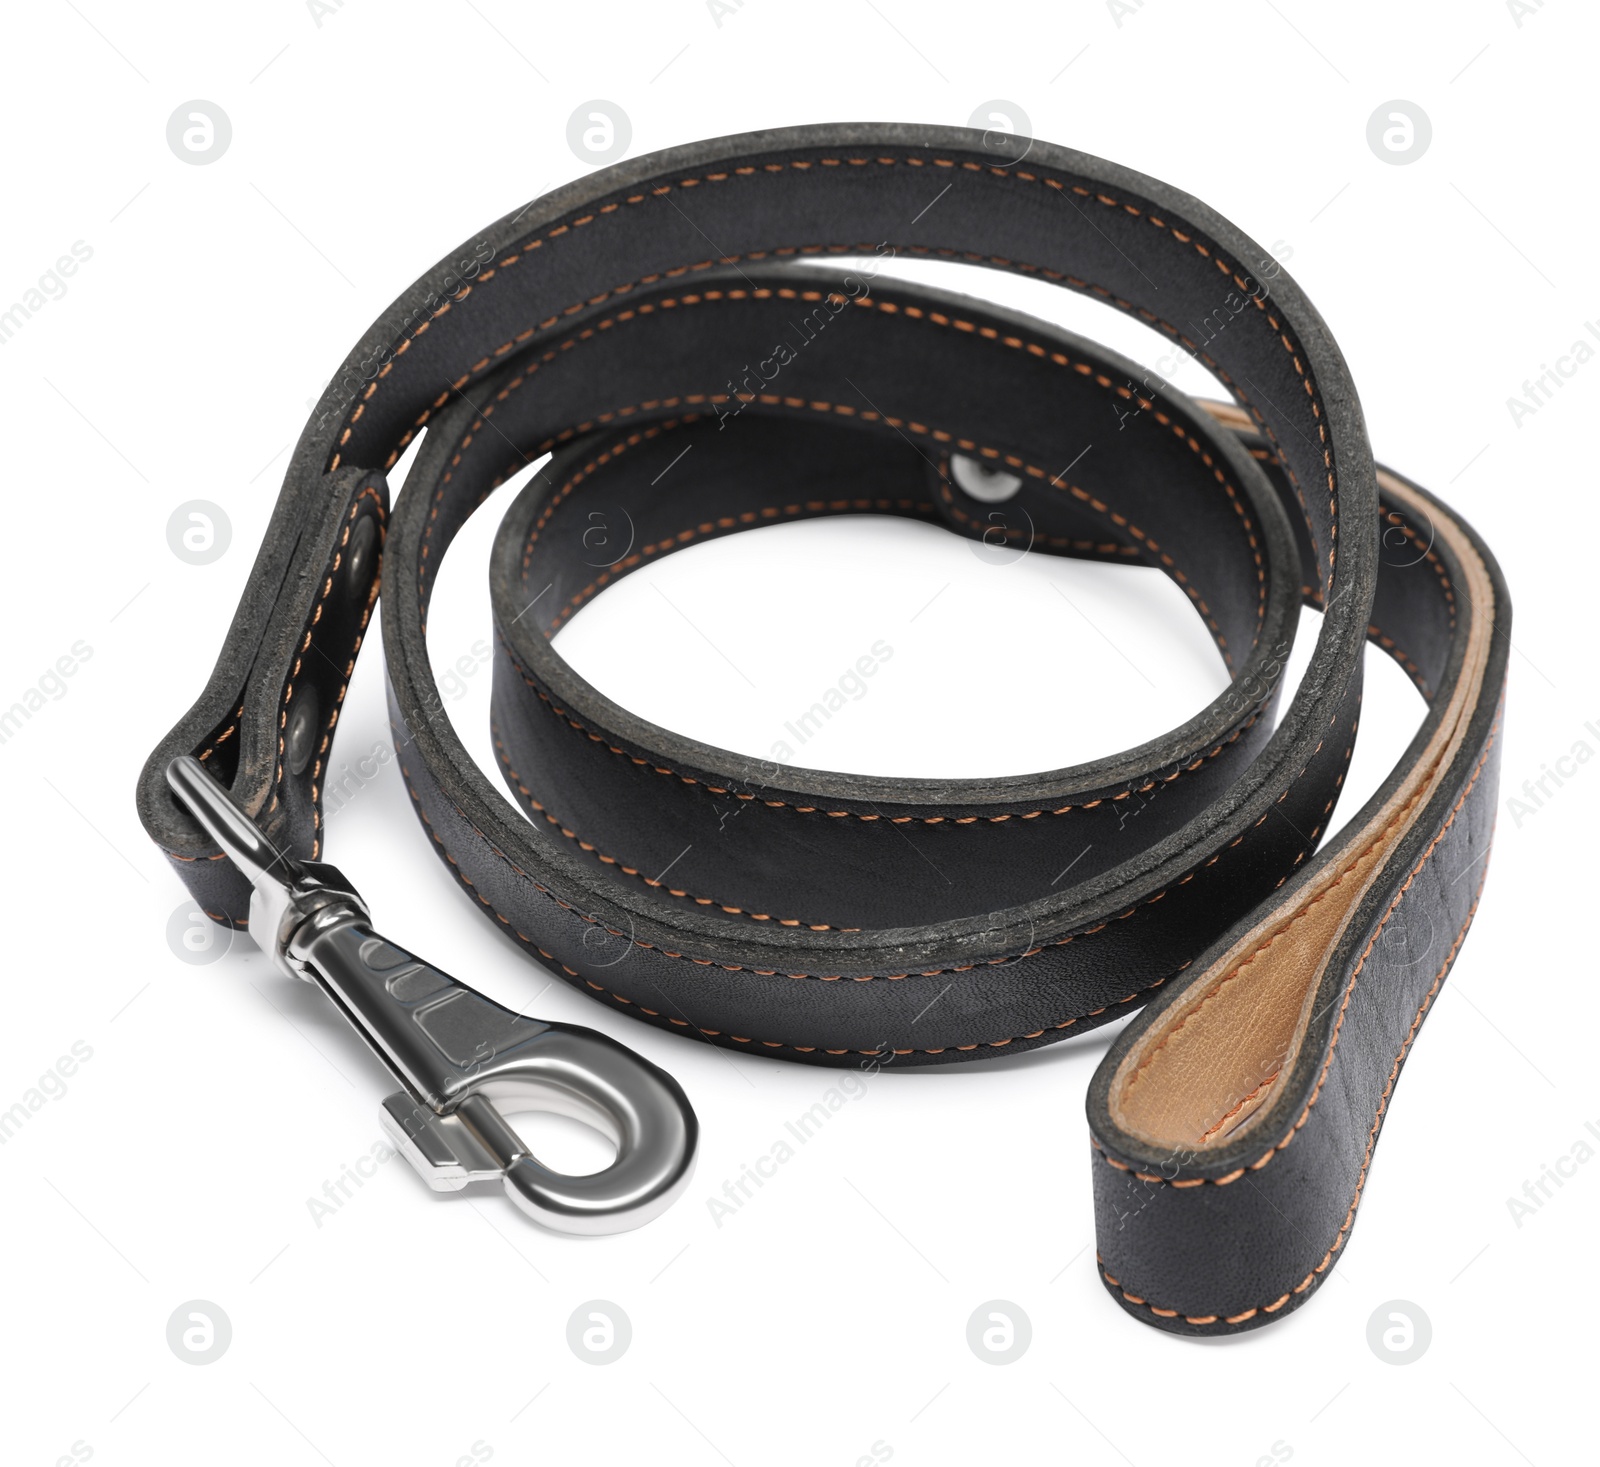 Photo of Black leather dog leash isolated on white